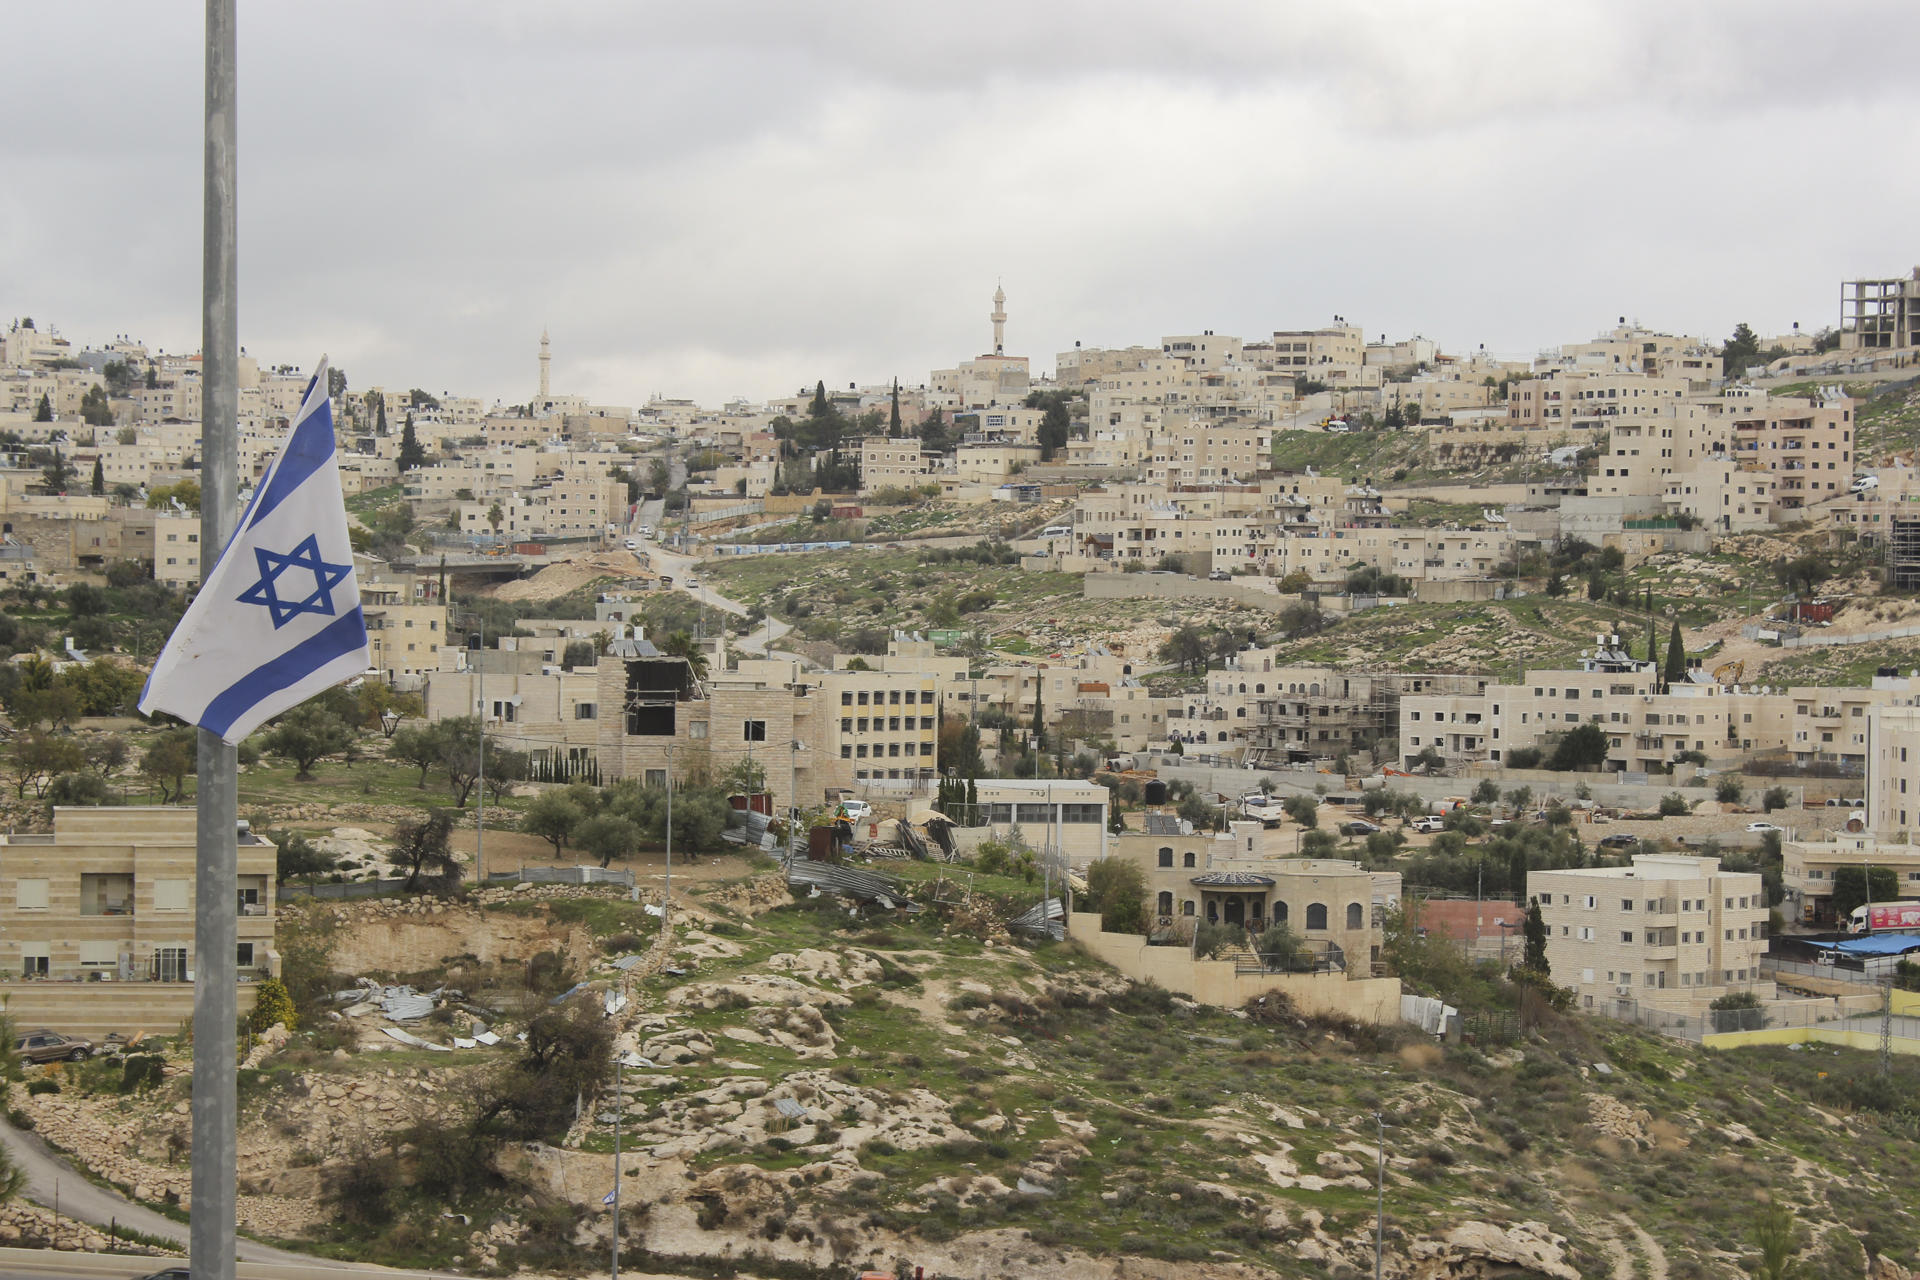 Ejército israelí promueve agresiones contra palestinos en Cisjordania